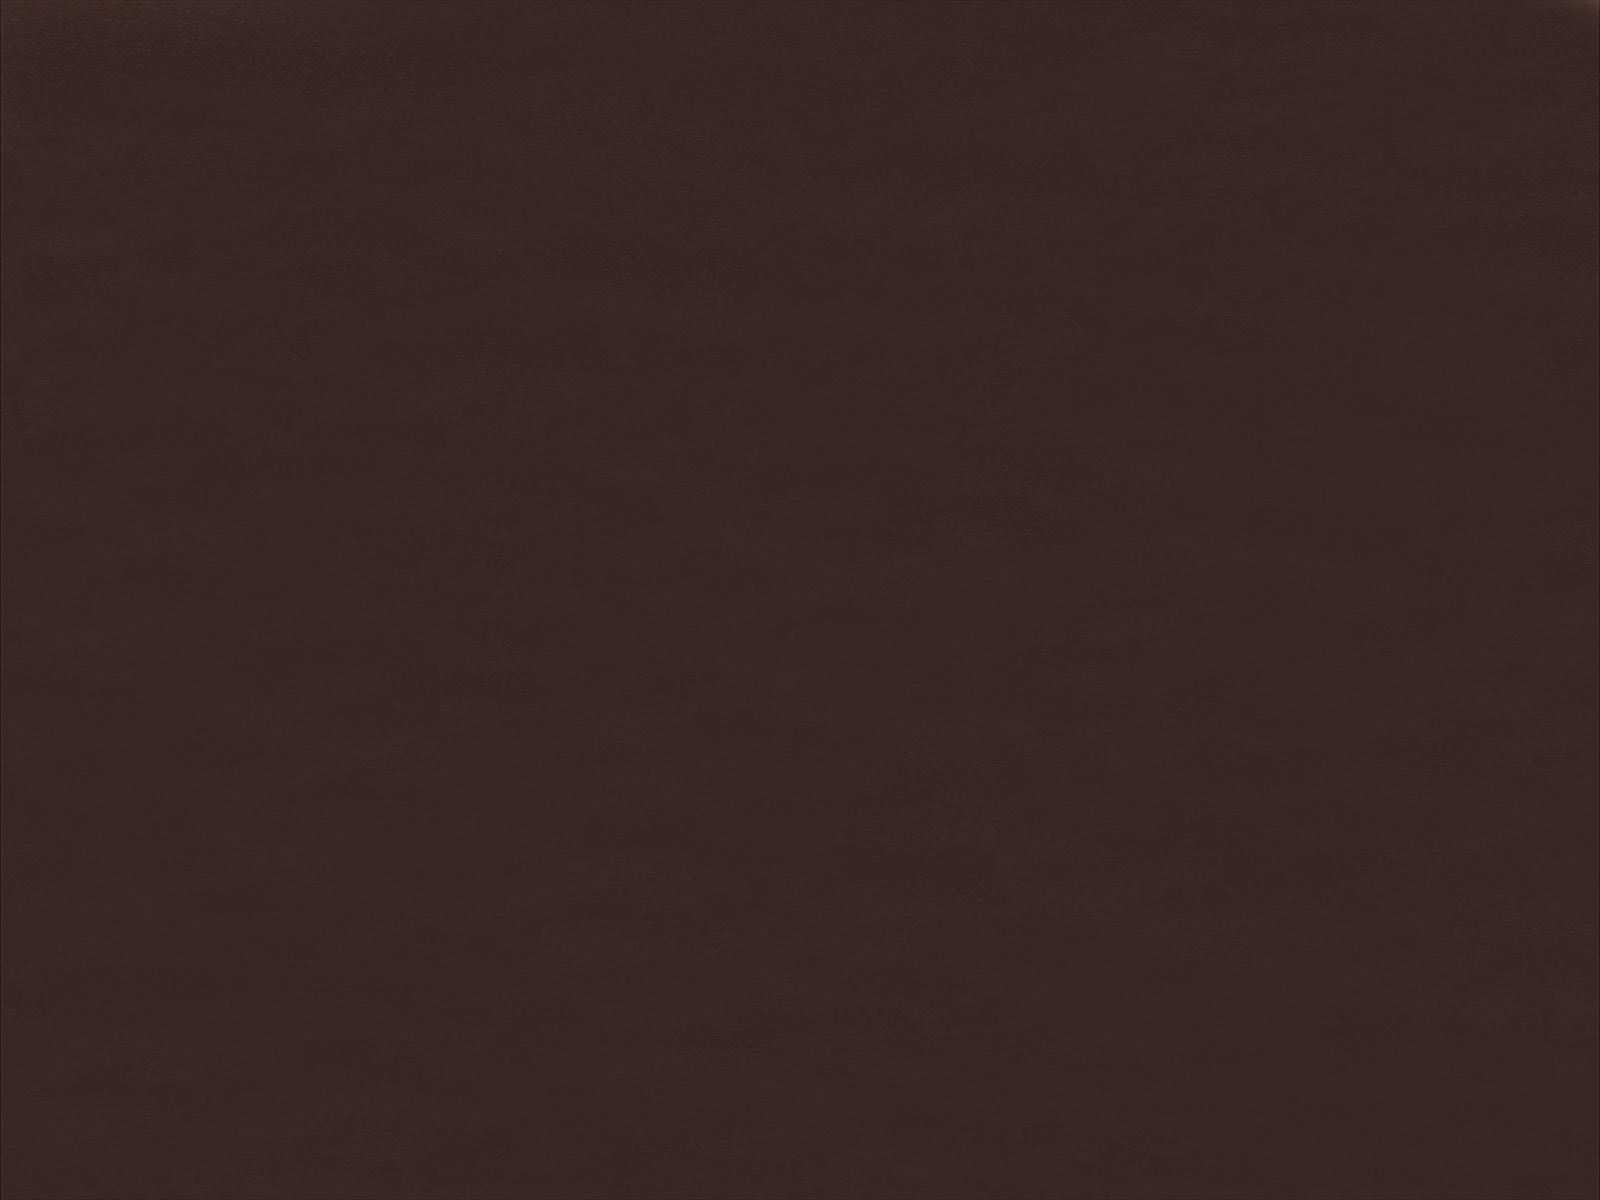 楽天市場 アイカ アイカ工業 オルティノ単色 Altyno 粘着剤付き化粧フィルム 粘着シート シートフィルム Diy 壁紙 クロス リフォームvkk 6515 メラミン化粧板専門店 メラポ